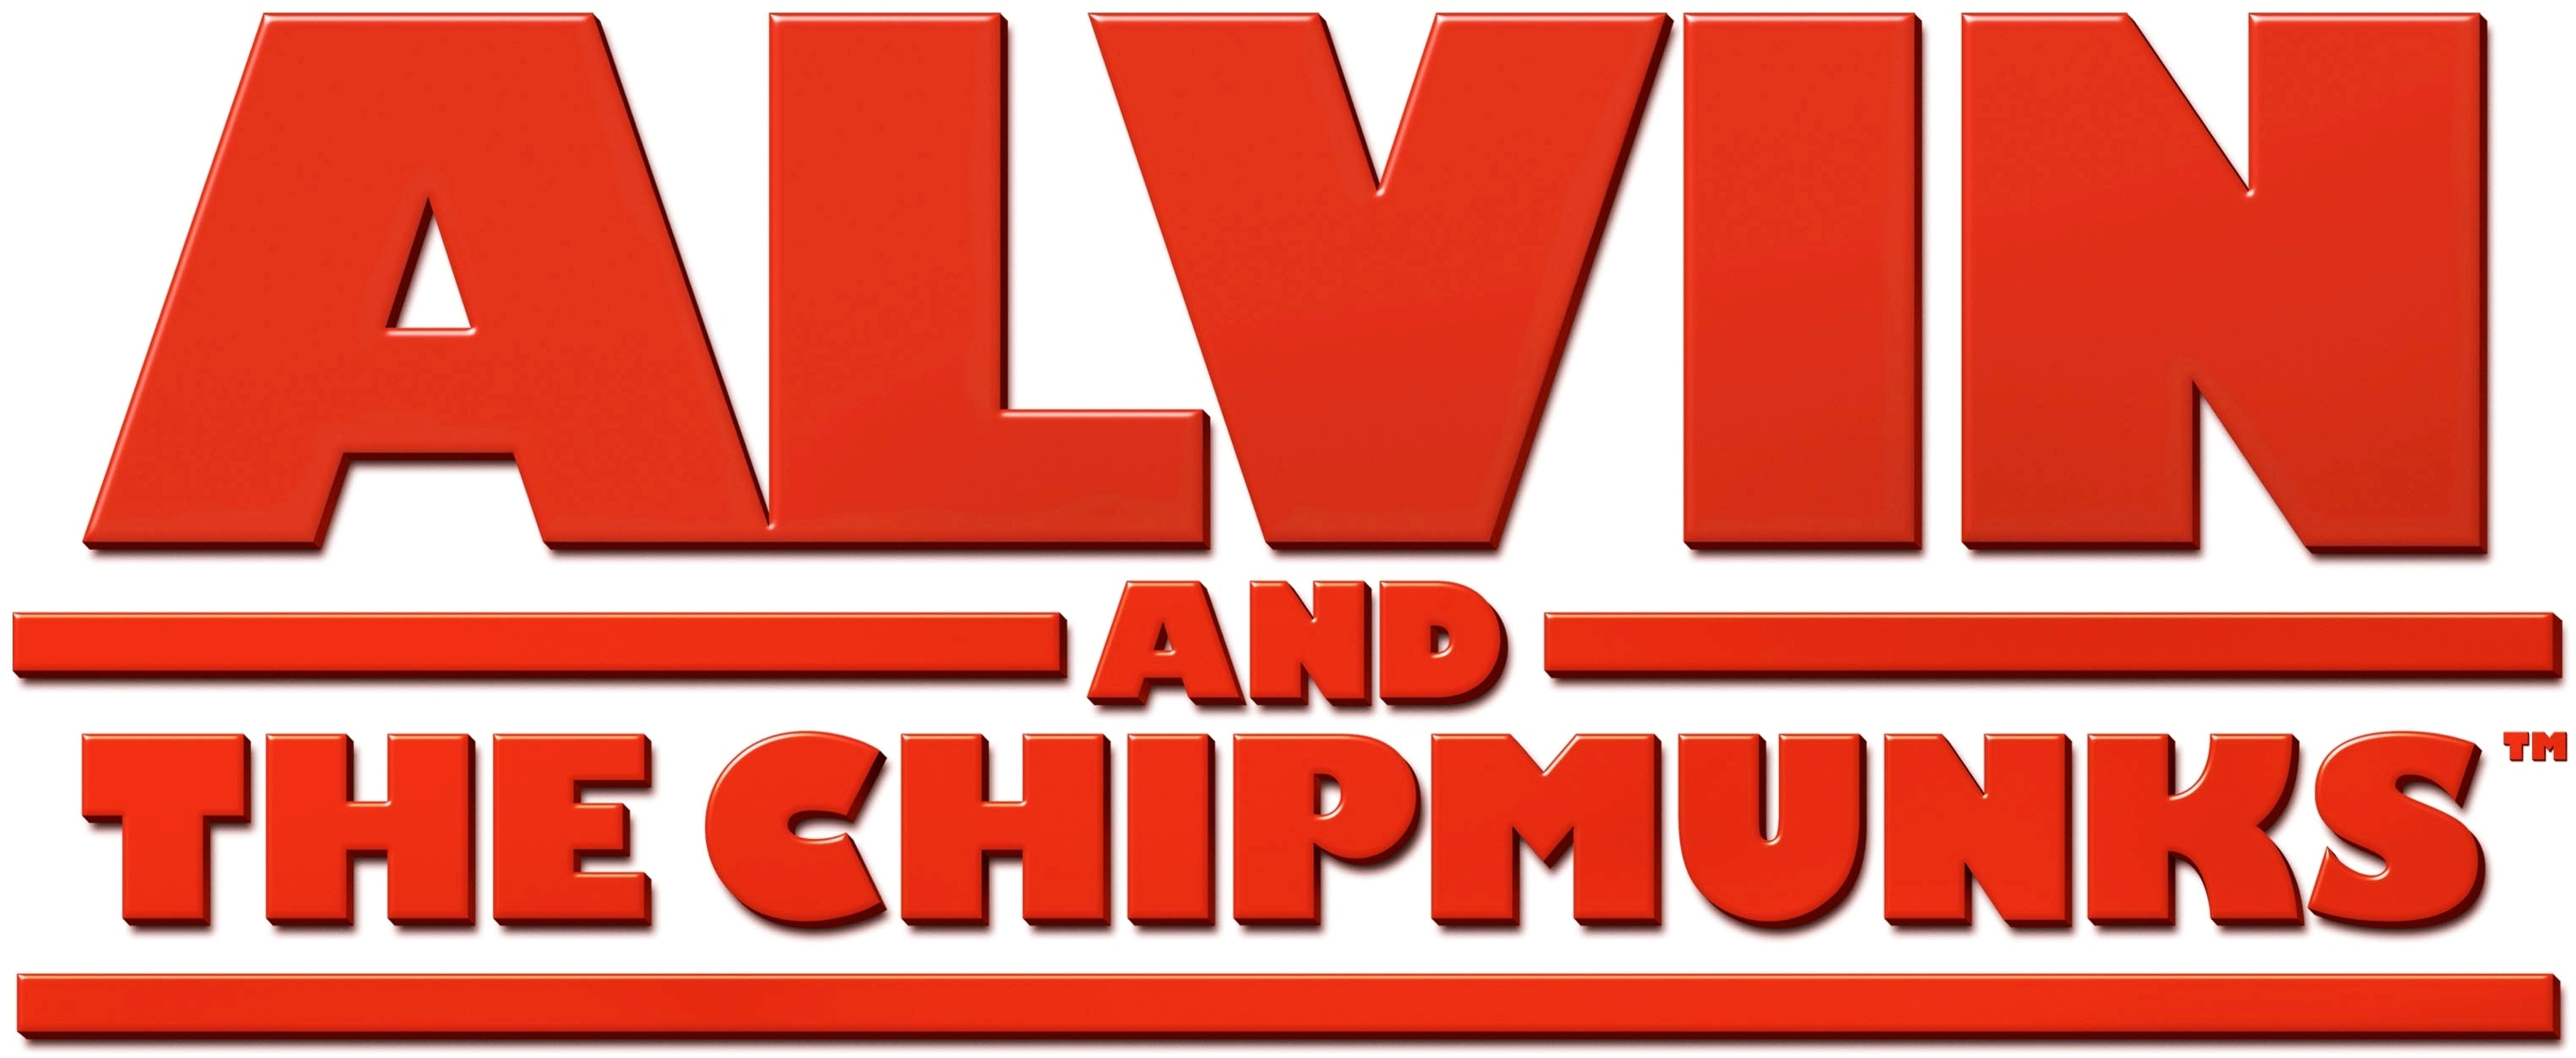 Alvin And The Chipmunks - Alvin And The Chipmunks Words (3200x1500)